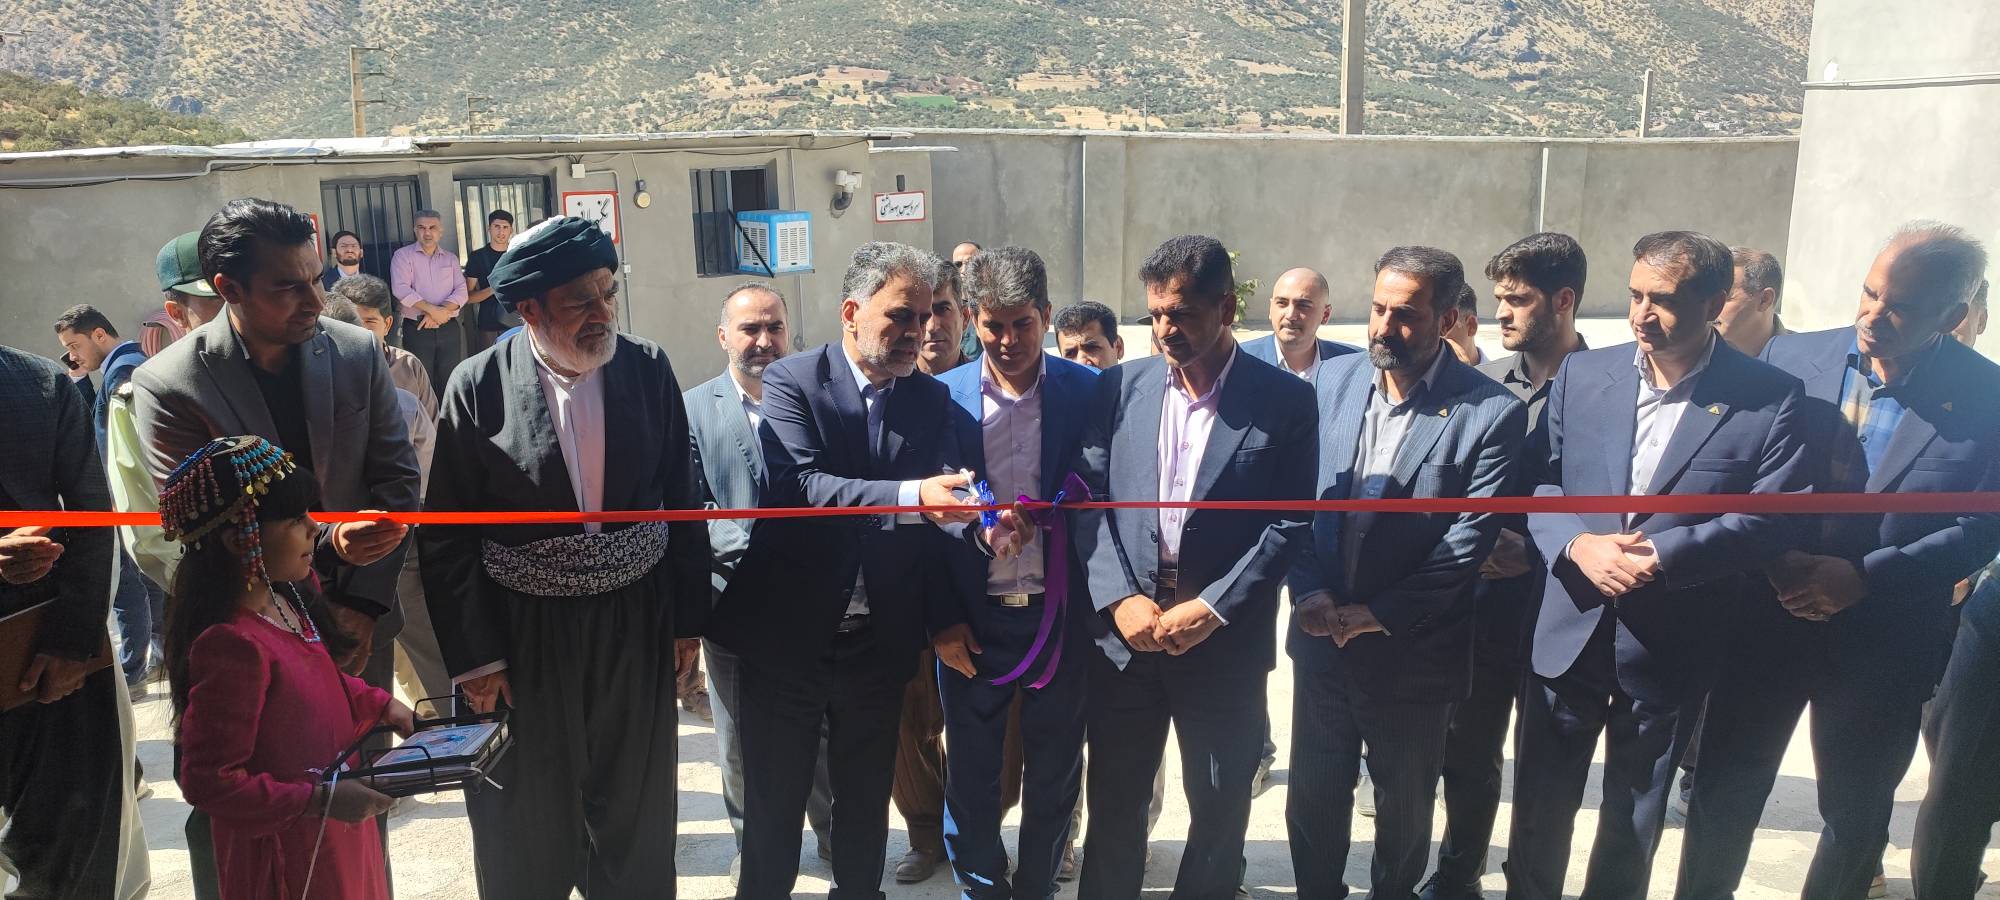 واحد تولید ترشیجات و شوریجات در شهرک صنعتی سروآباد استان کردستان افتتاح شد